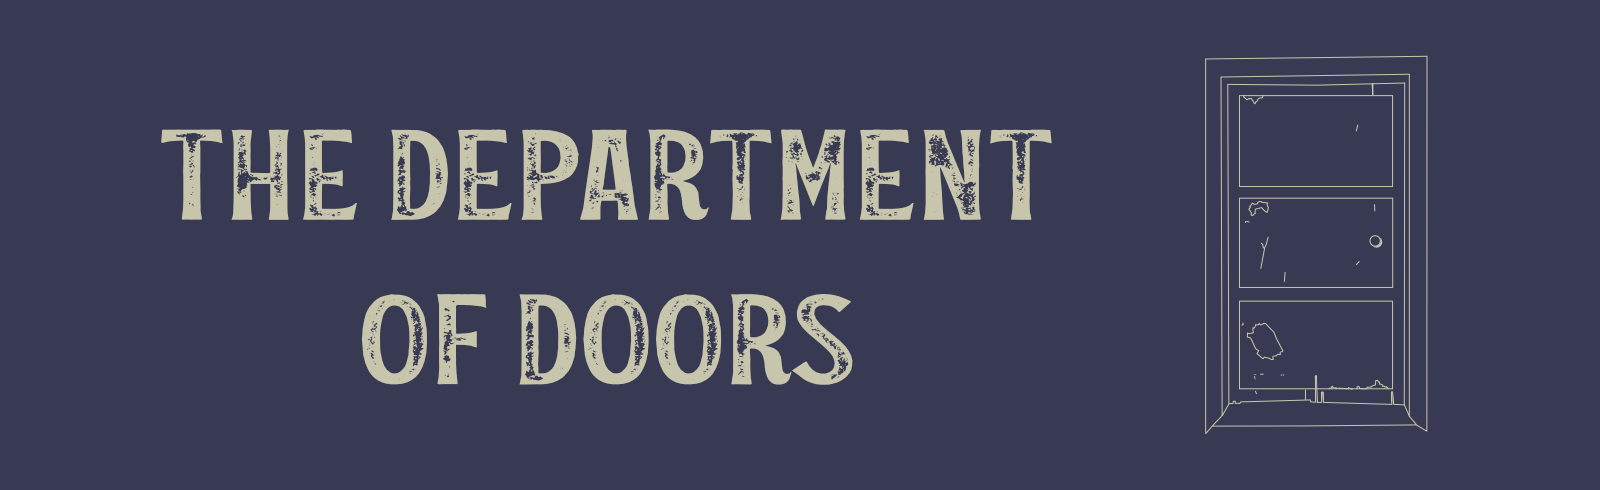 The Department of Doors